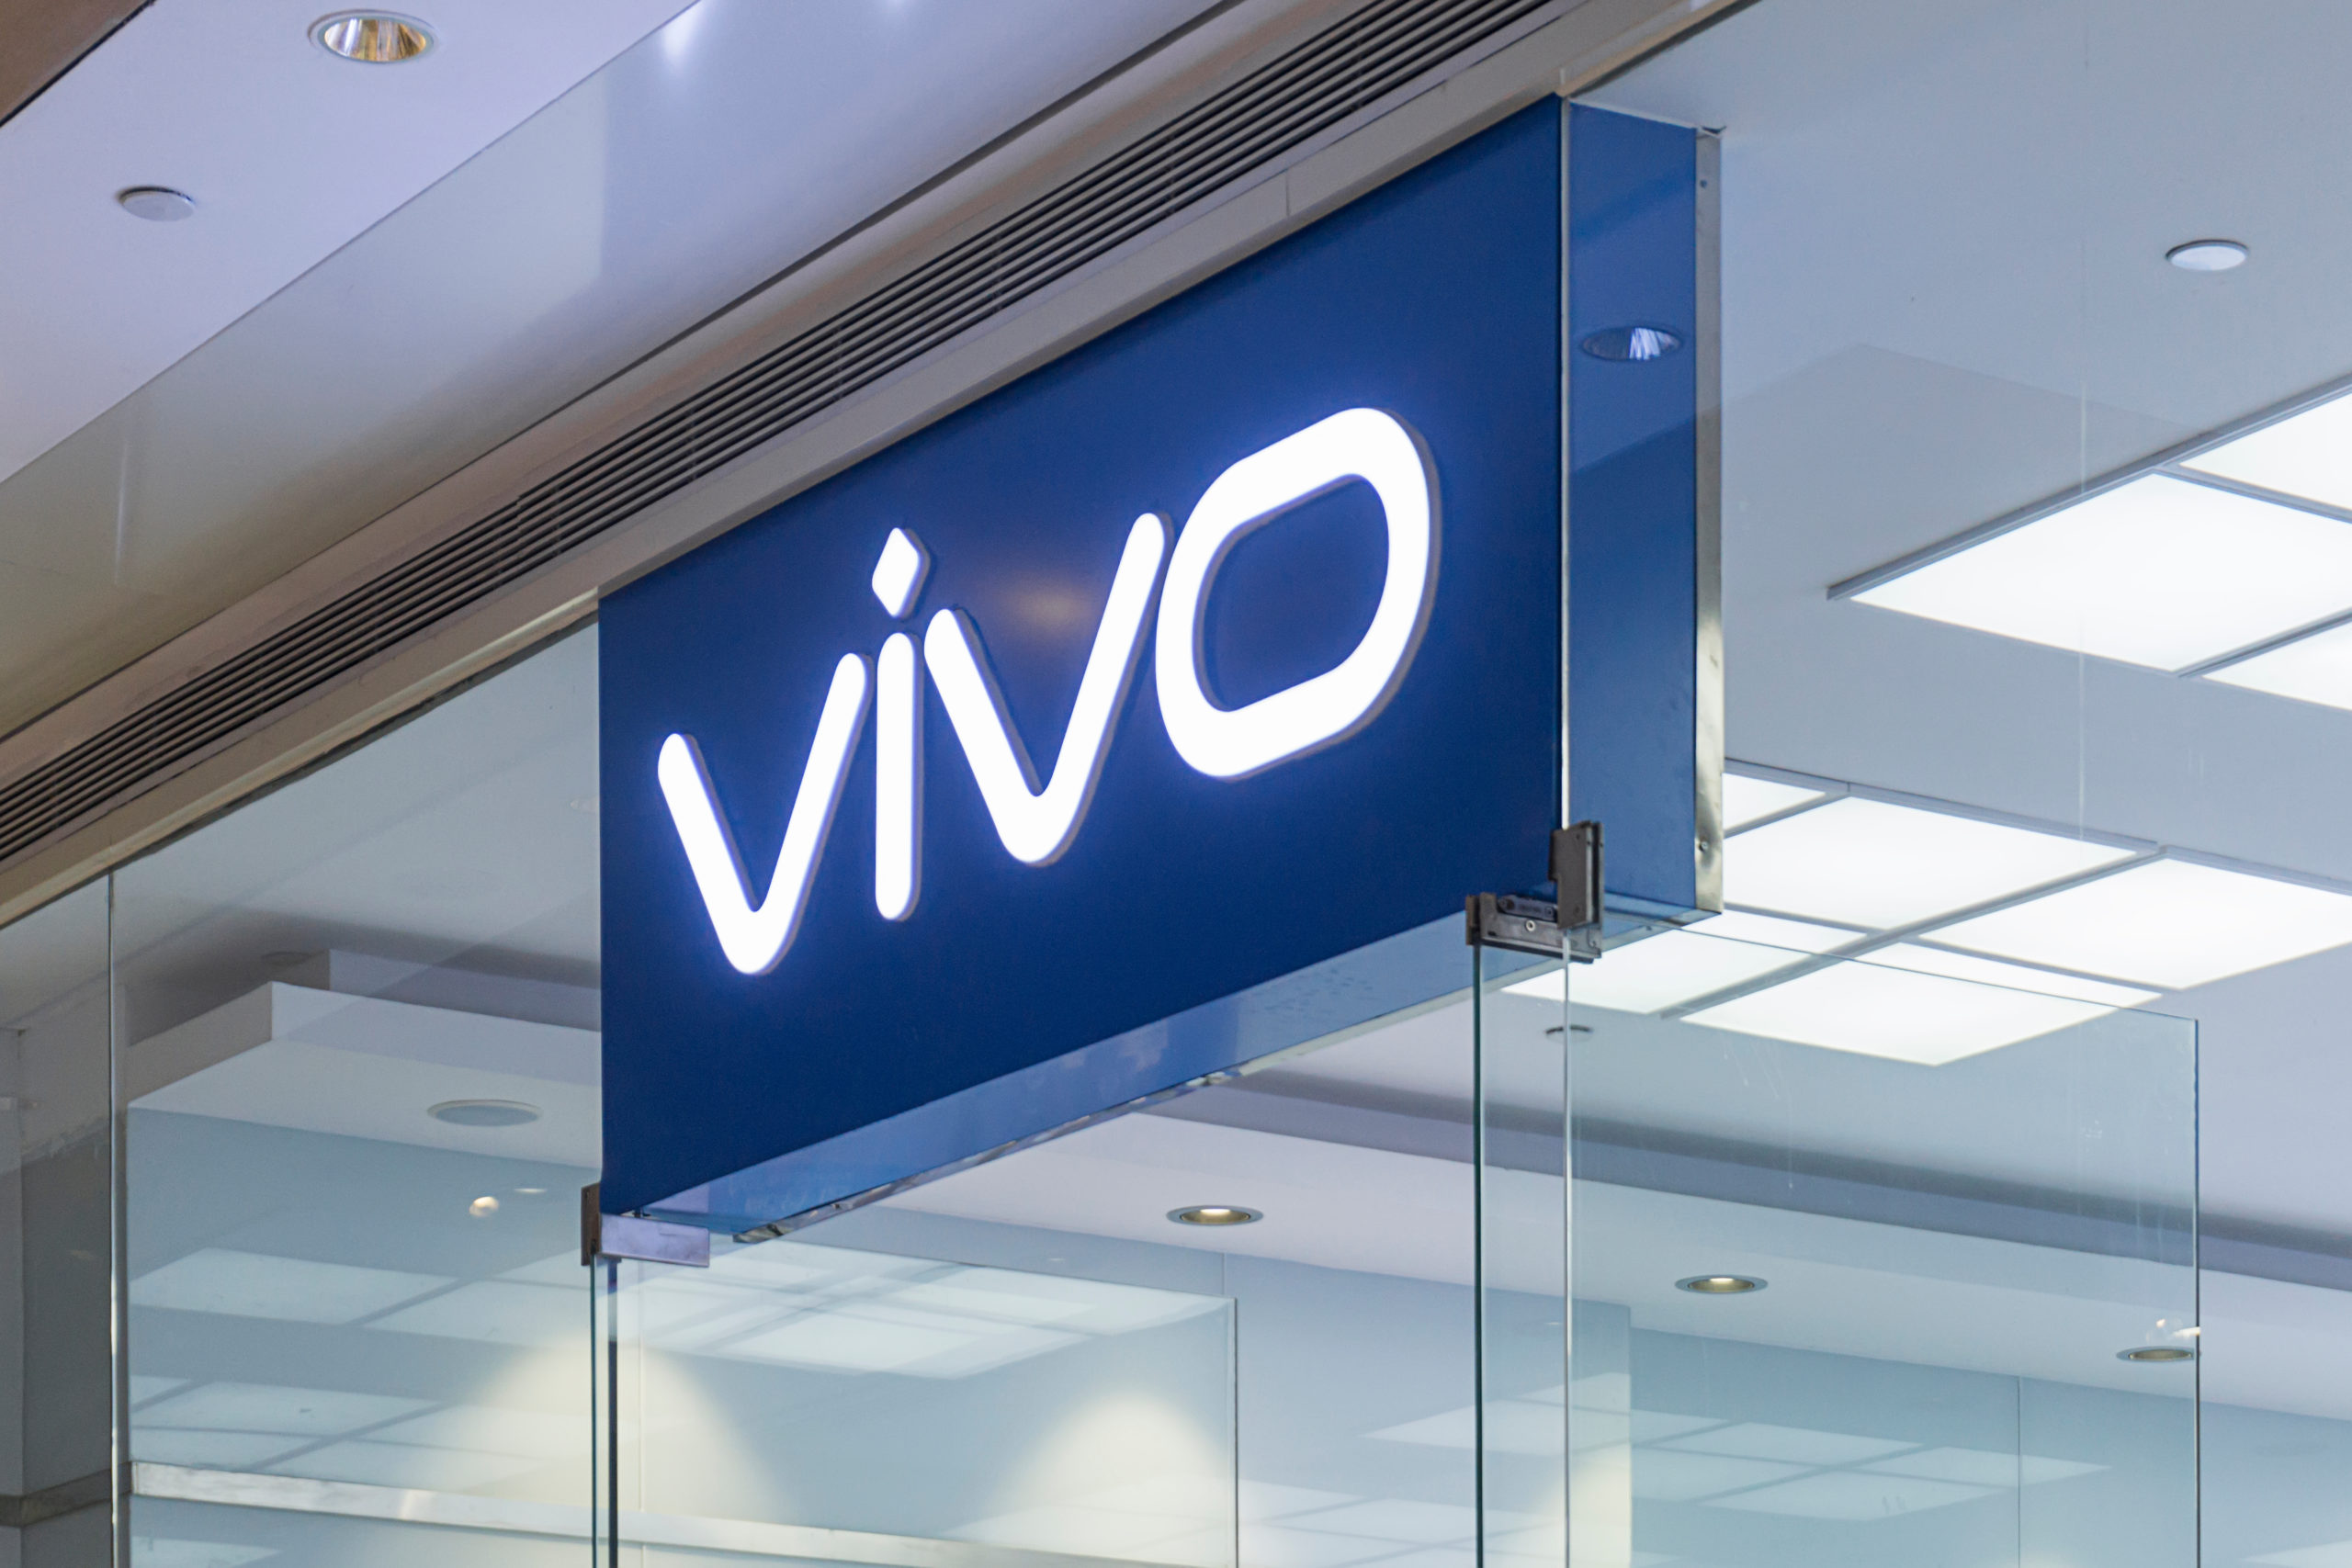 Neues von Vivo – Foldable und Tablet stehen in den Startlöchern (News)